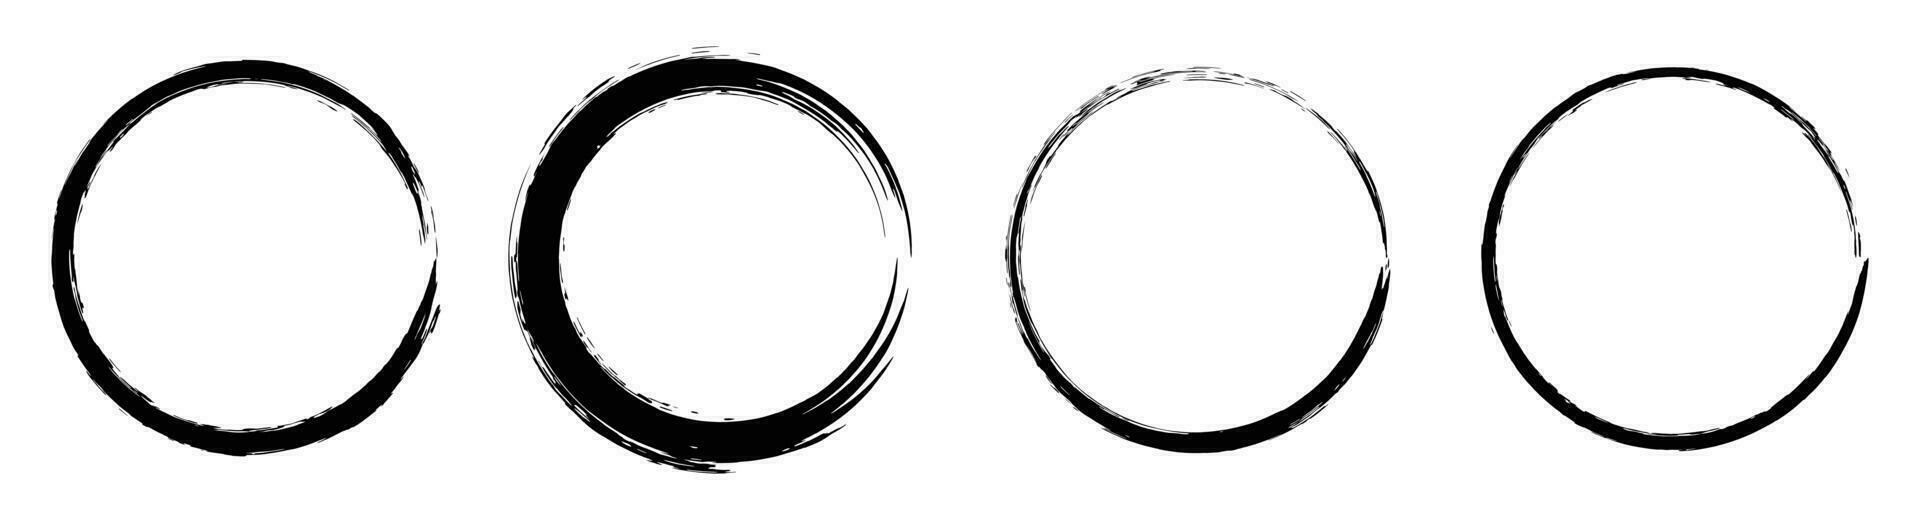 Black grunge circle brush. Ink frame set vector illustration